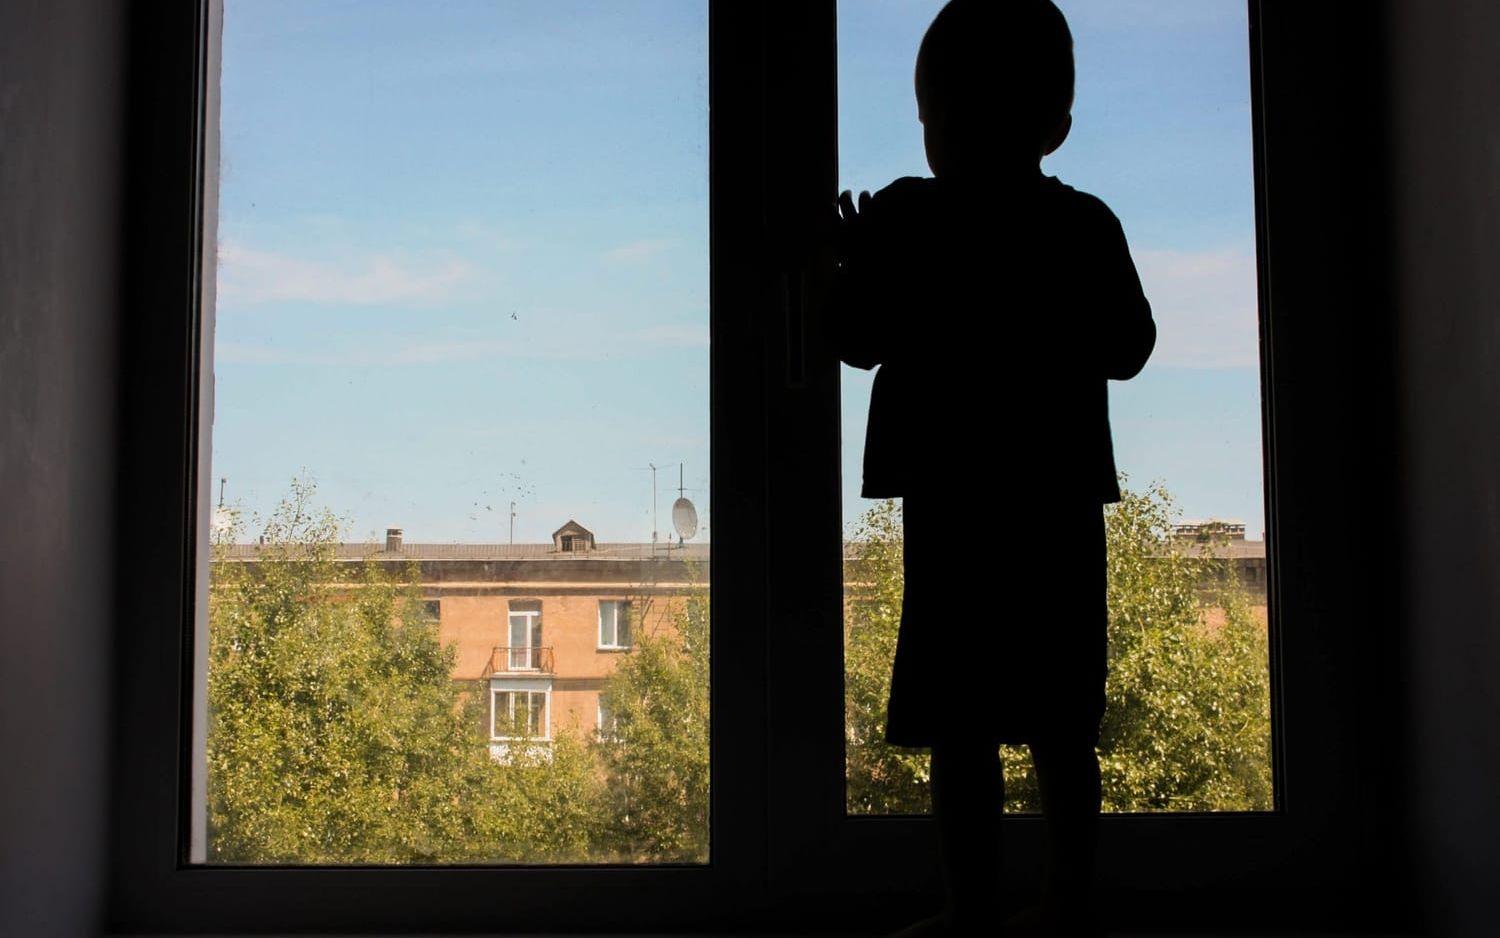 Hos Göteborgs kvinnojourer ser man att barn ibland blir hemma från skolan i flera månader, ibland merparten av en termin. Barnet på bilden har inget med artikeln att göra. Bild: Kseniia Glazkova